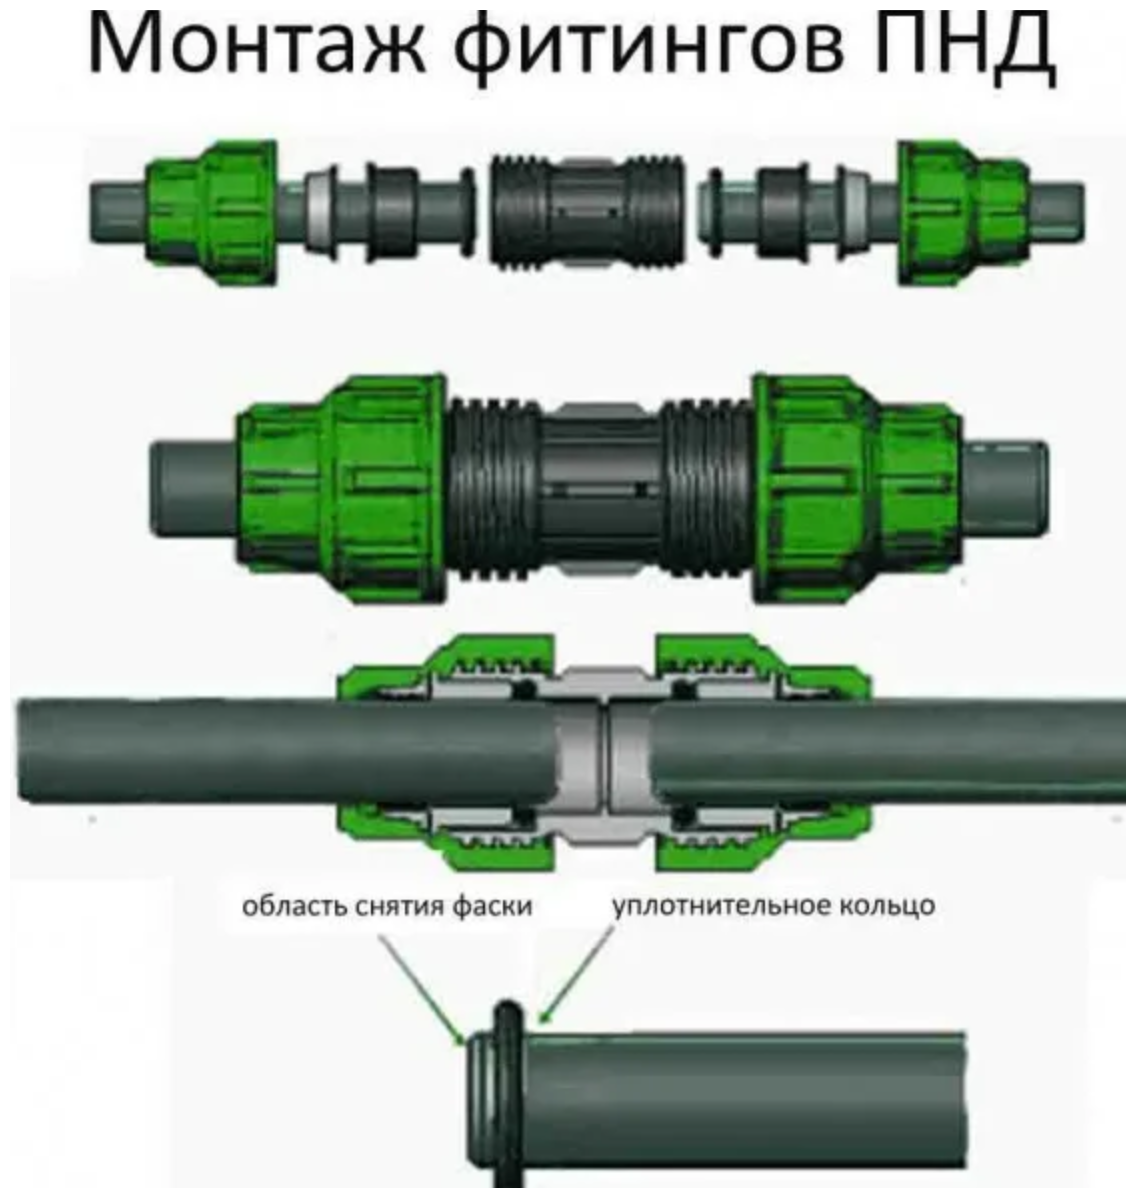 Соединение черной трубы. Муфта соединительная ПНД 32x32. Муфта ПНД 63 мм соединительная. Муфта соединительная ПНД 32 мм. Монтаж муфты ПНД 32 мм.